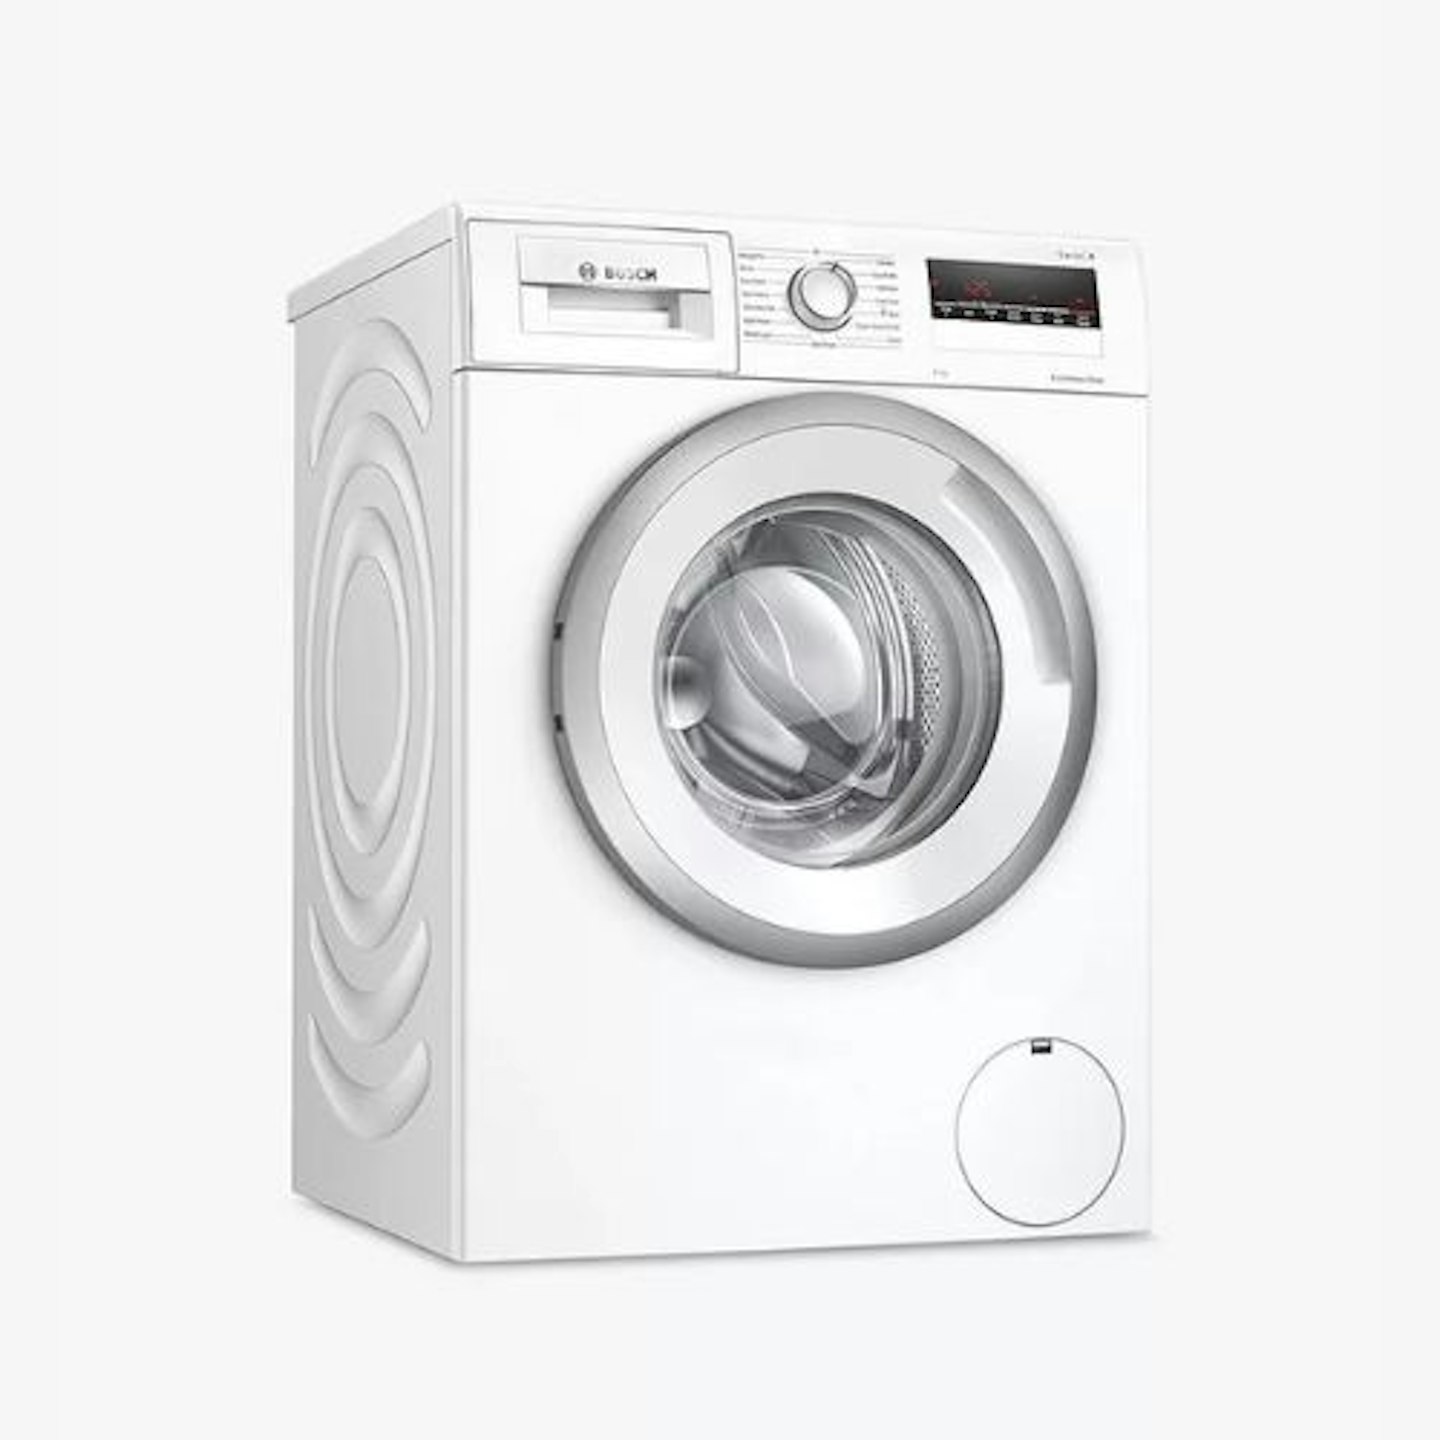 Bosch, S4 Freestanding Washing Machine, 8kg - White